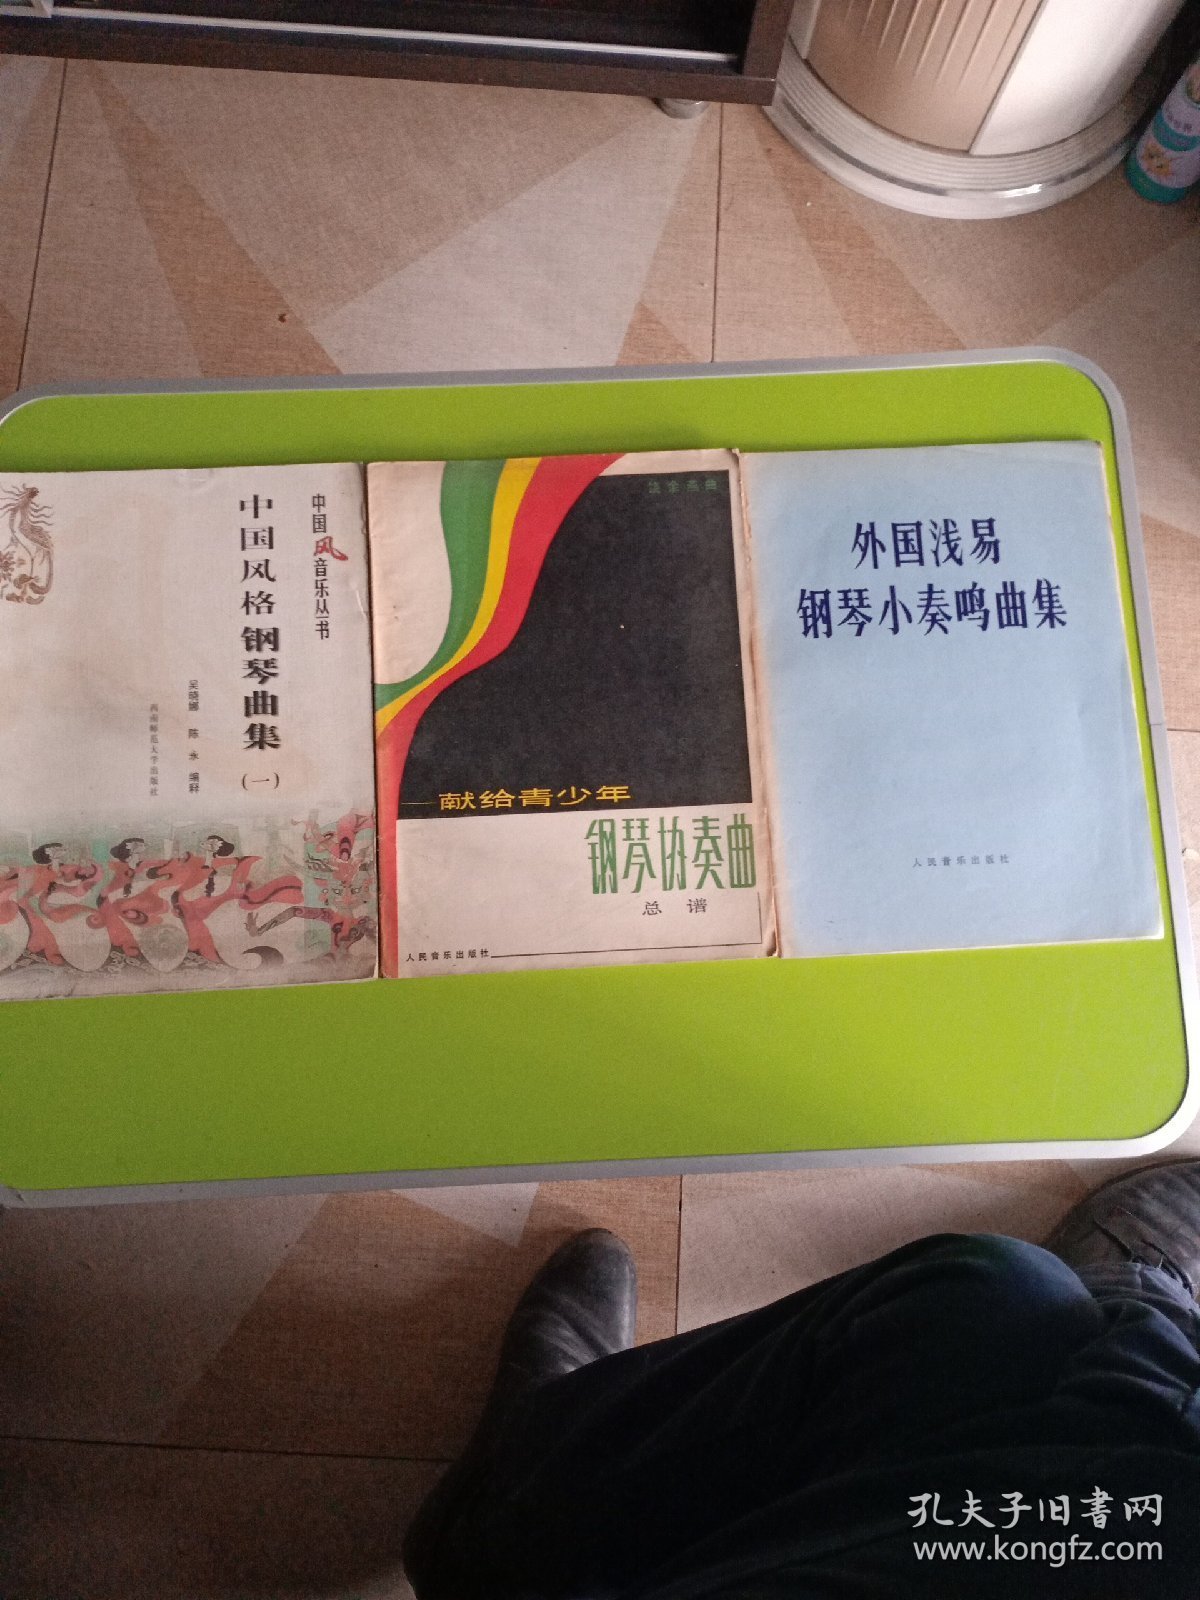 钢琴曲谱三册合售：中国风格钢琴曲集（1）、献给青少年钢琴协奏曲 总谱、外国浅易钢琴小奏鸣曲集